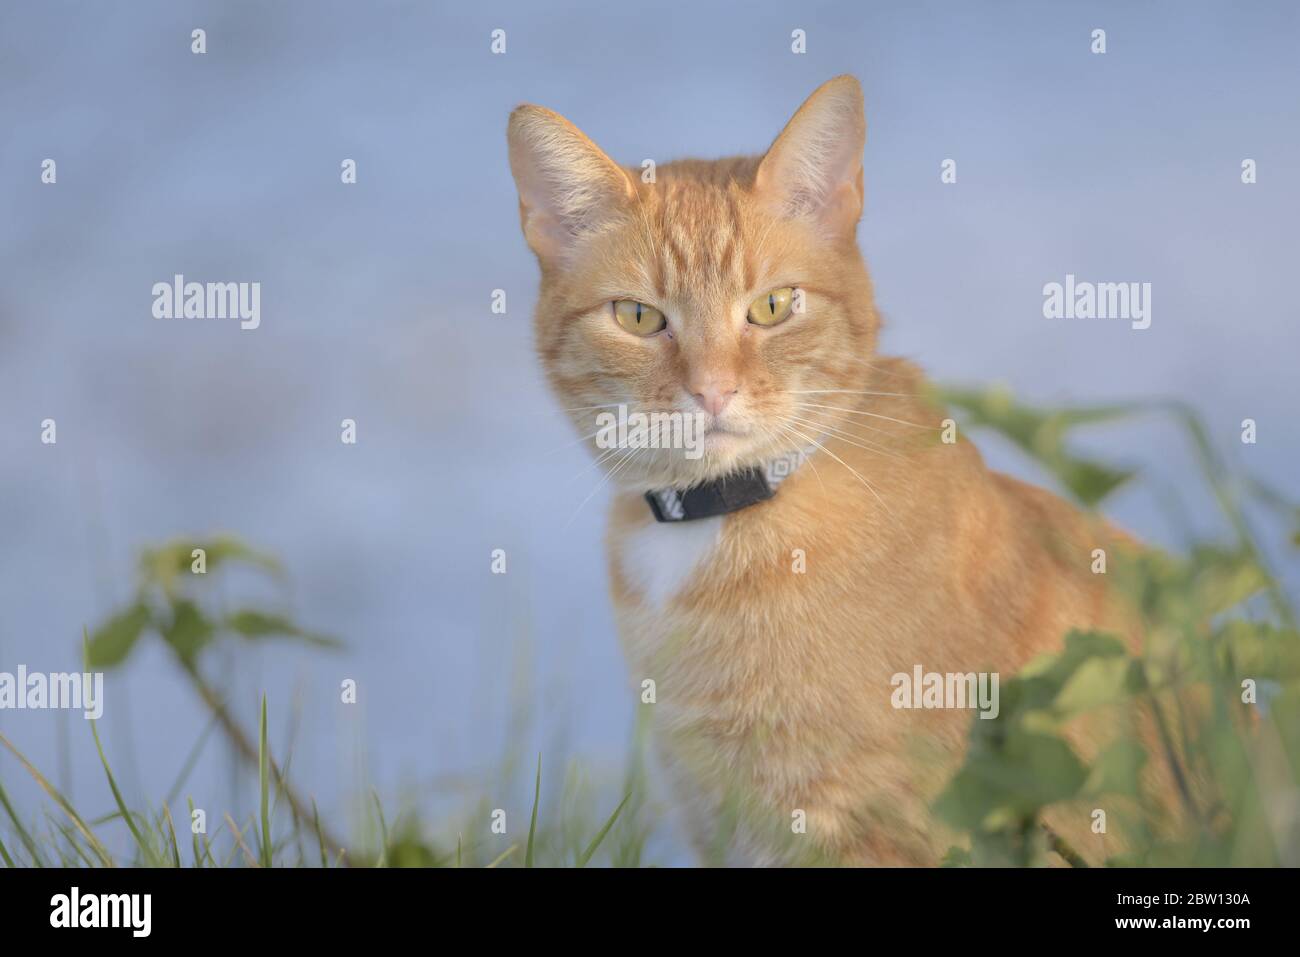 Directement en regardant l'appareil photo, ce chat tabby au gingembre est situé au milieu du feuillage. Le fond bleuâtre est fourni par l'étang que les plantes entourent. Banque D'Images